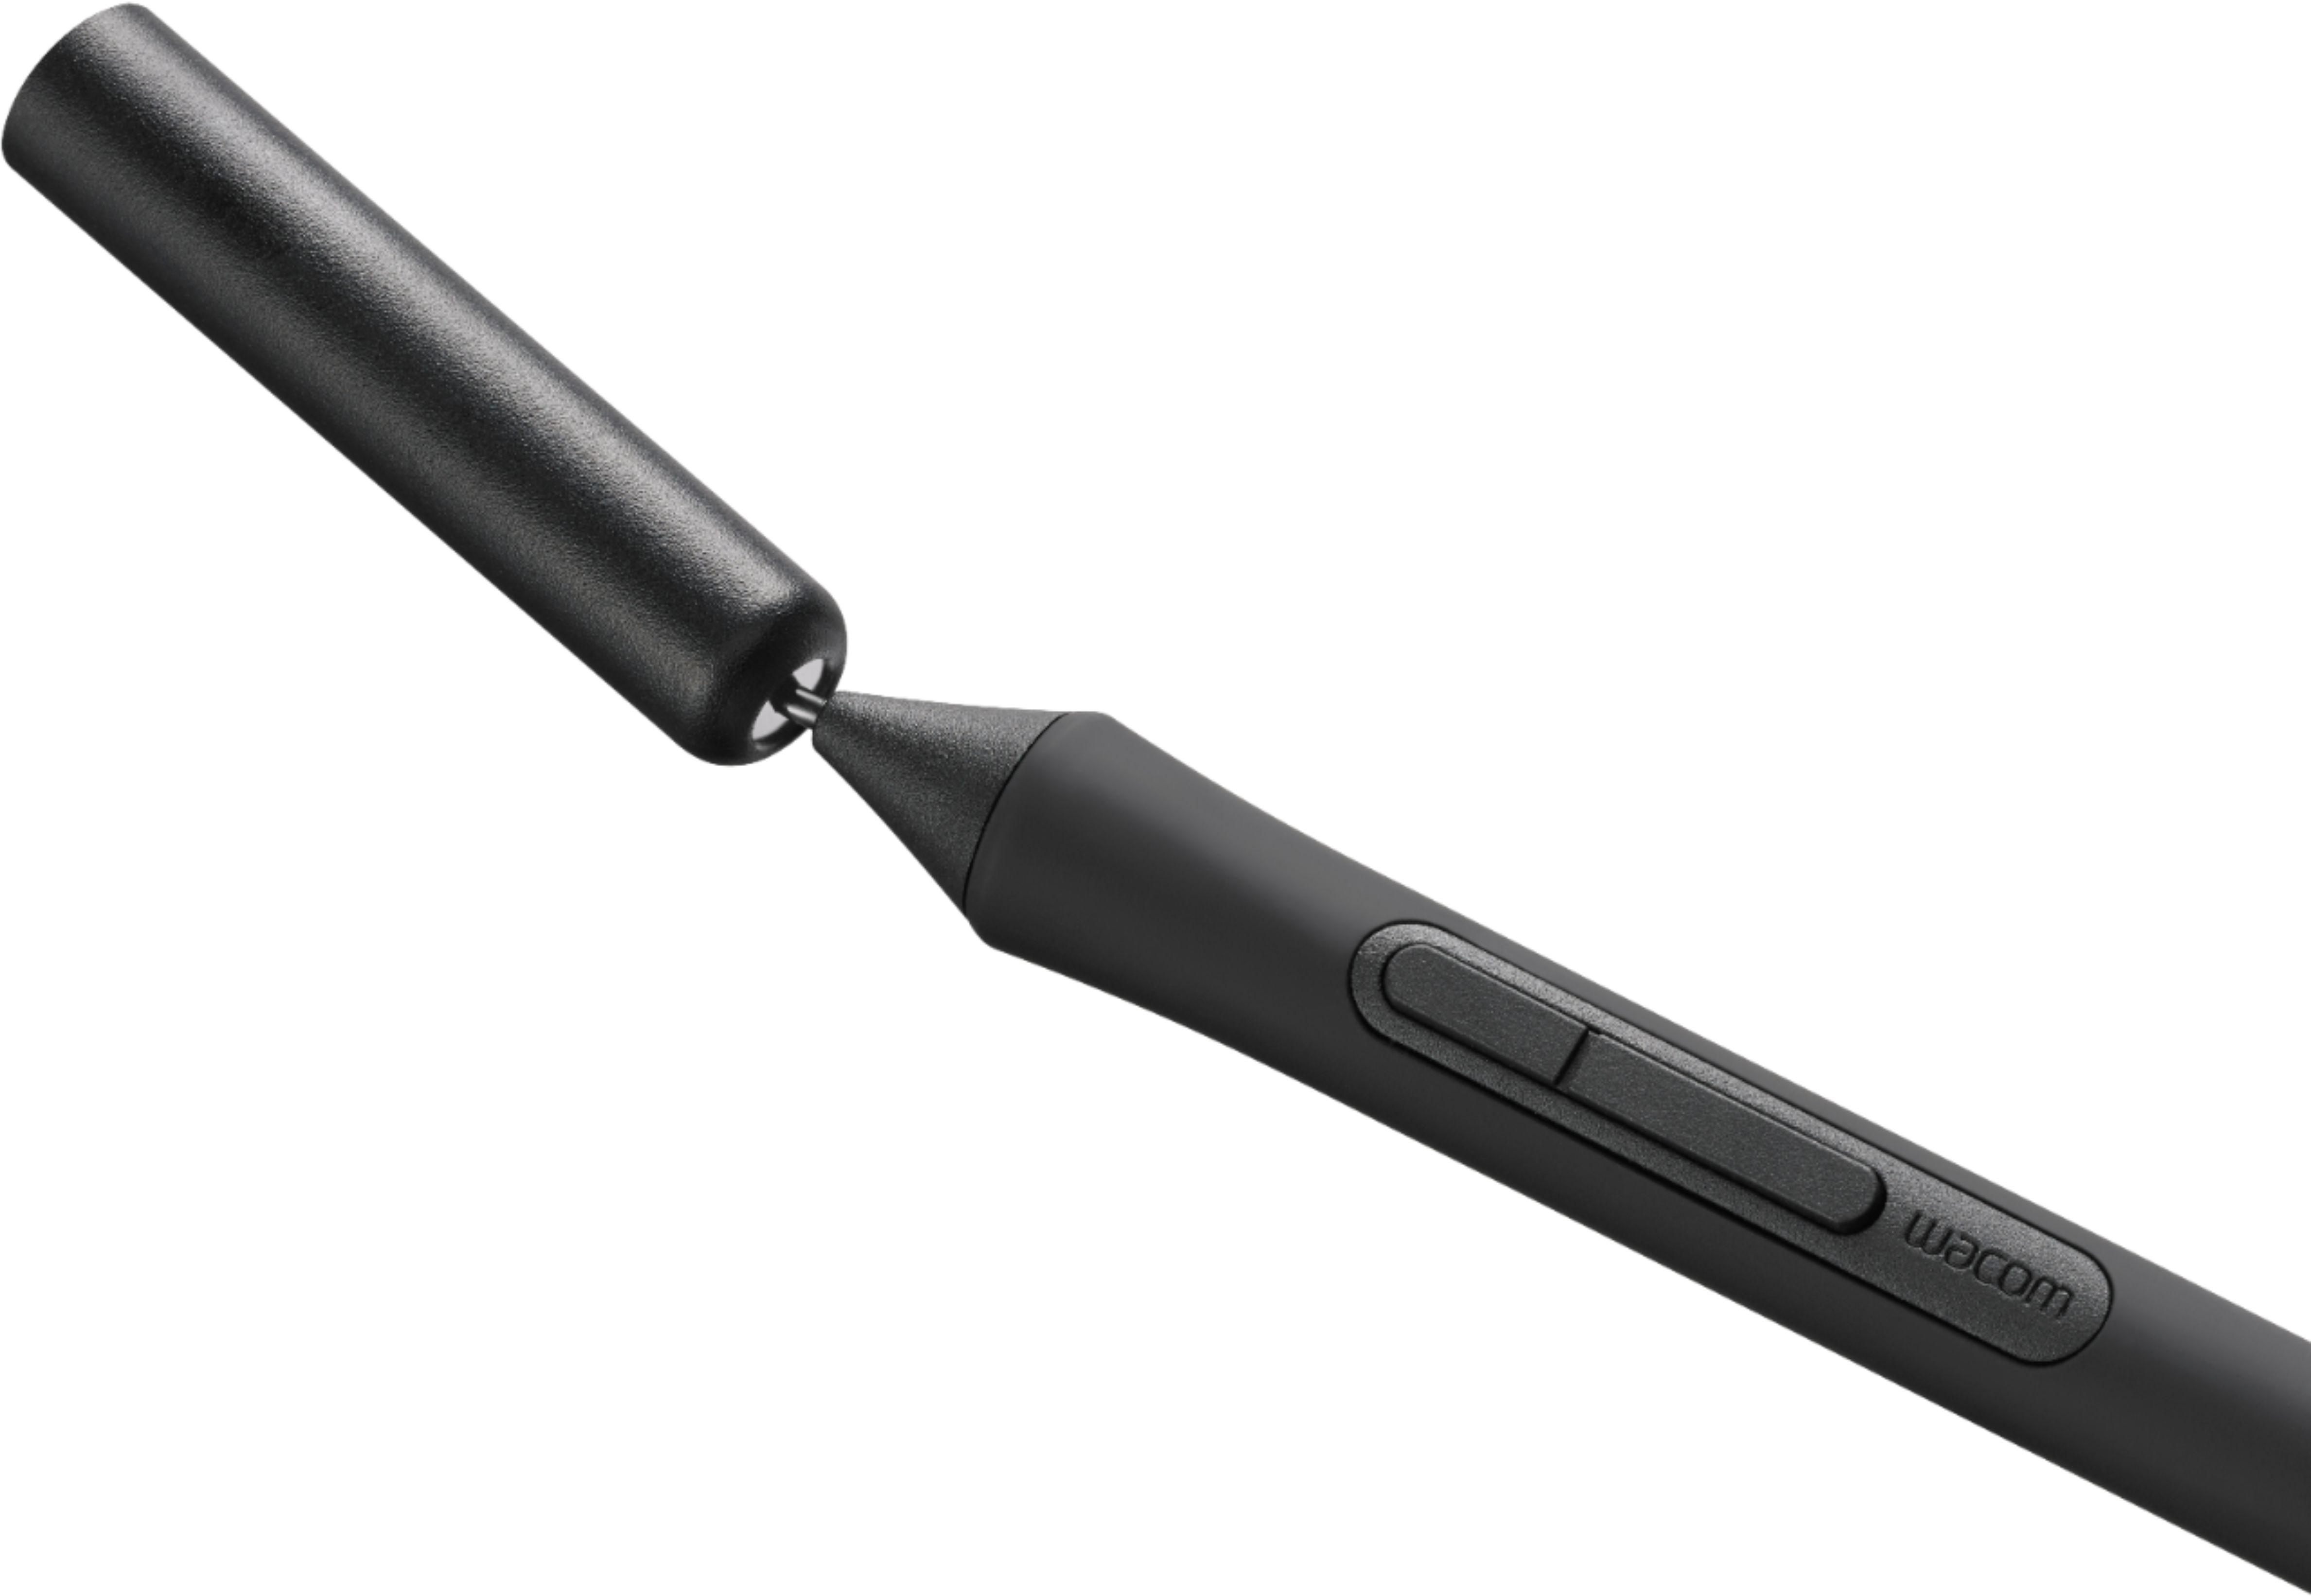 Buy Wacom Standard Black Pen Nibs Set of 5 Online in UAE